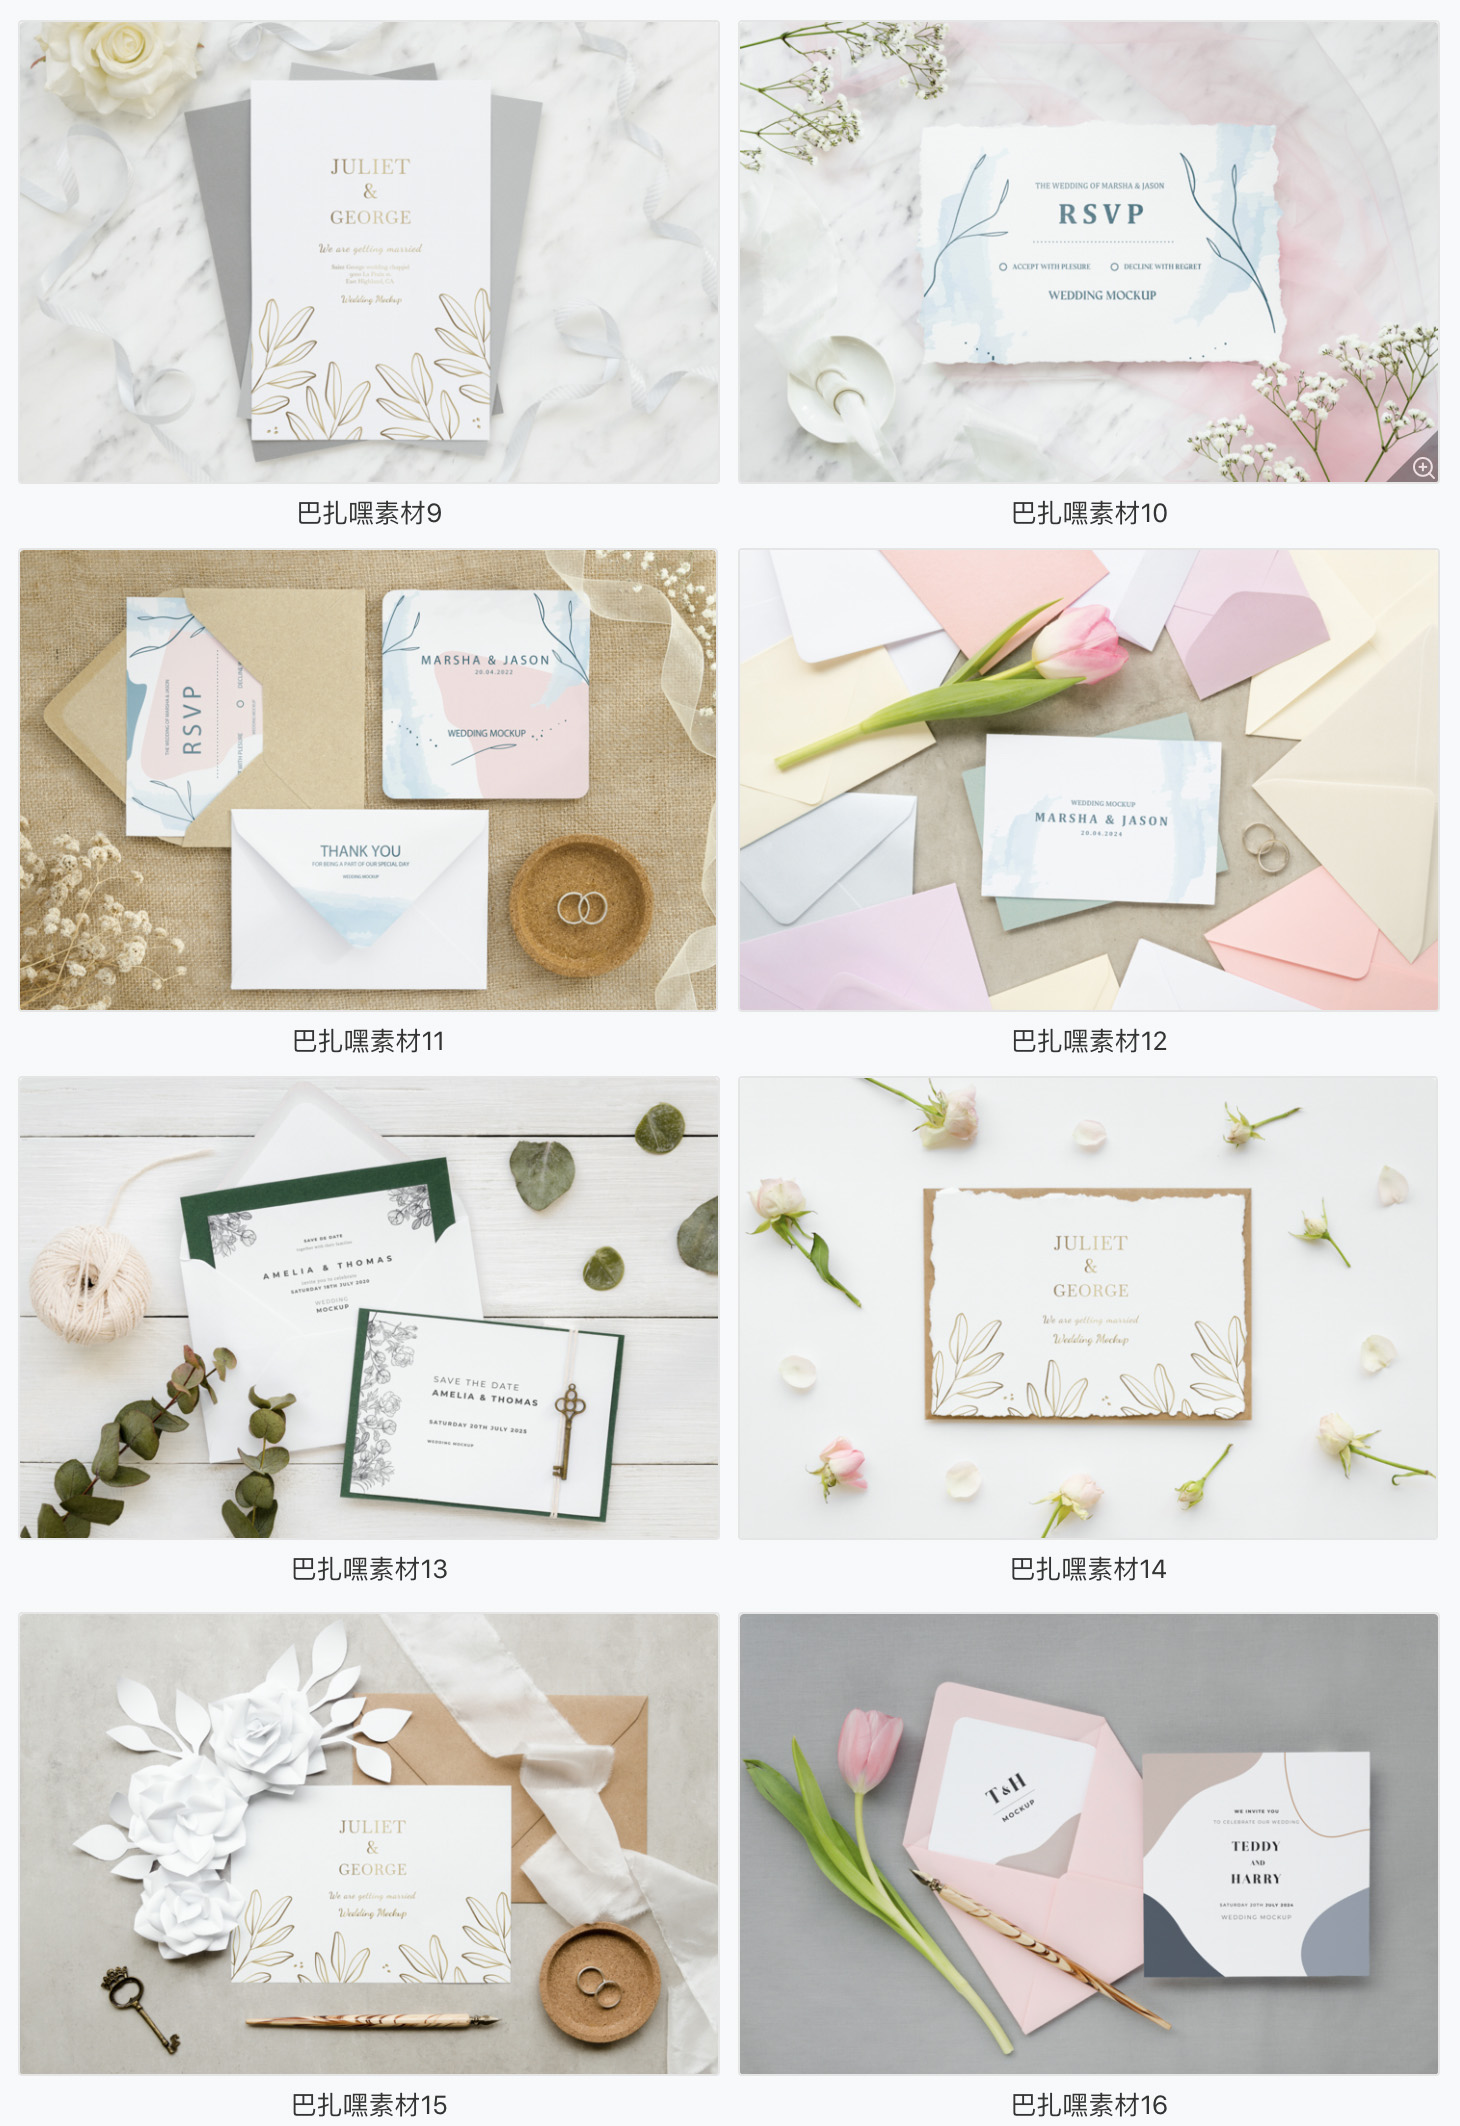 信函卡片贺卡唯美婚礼花朵女性智能贴图VI样机提案PSD设计素材